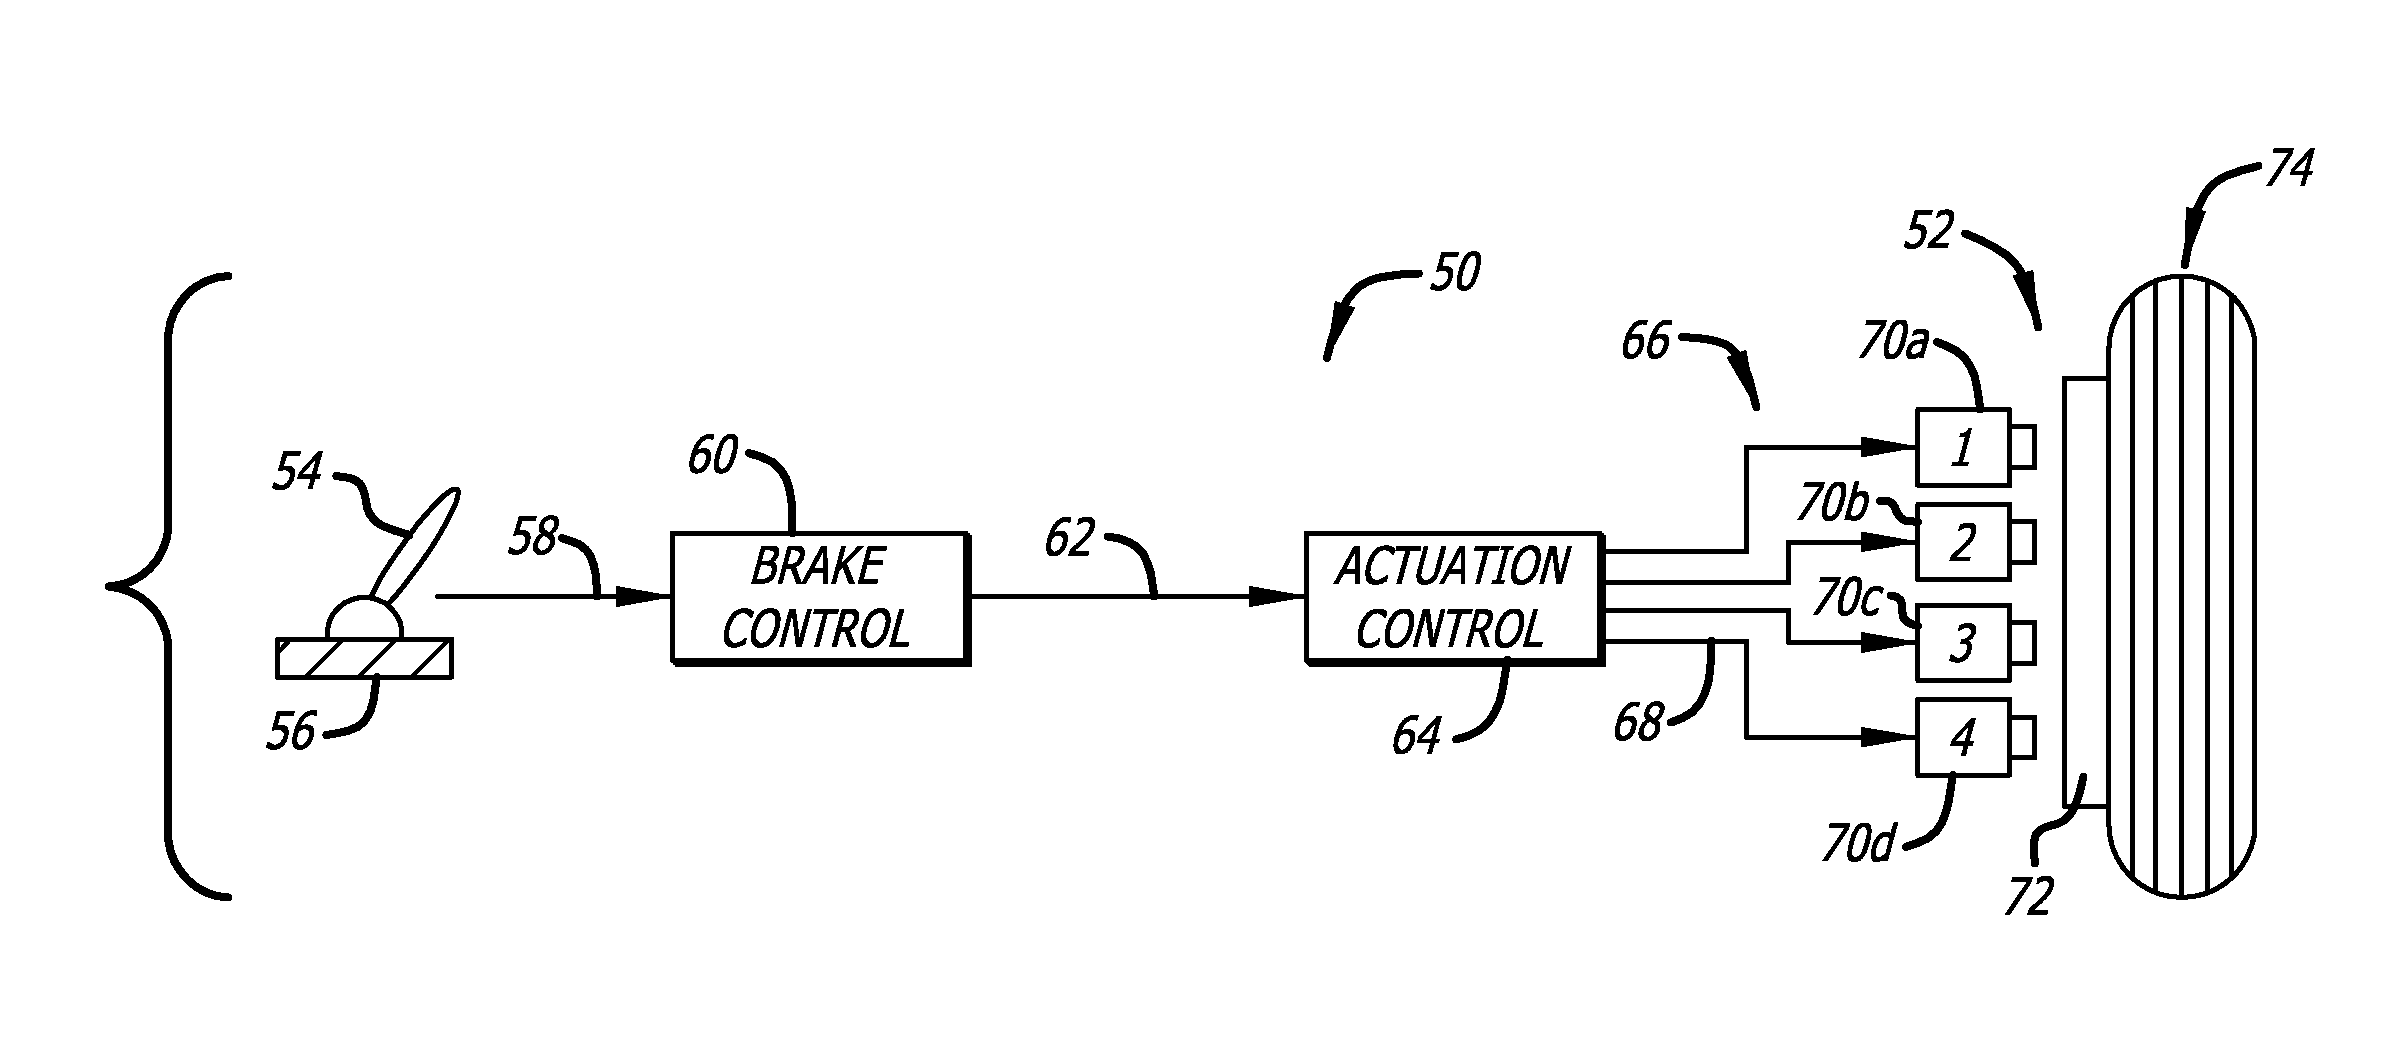 Electronic motor actuators brake inhibit for aircraft braking system